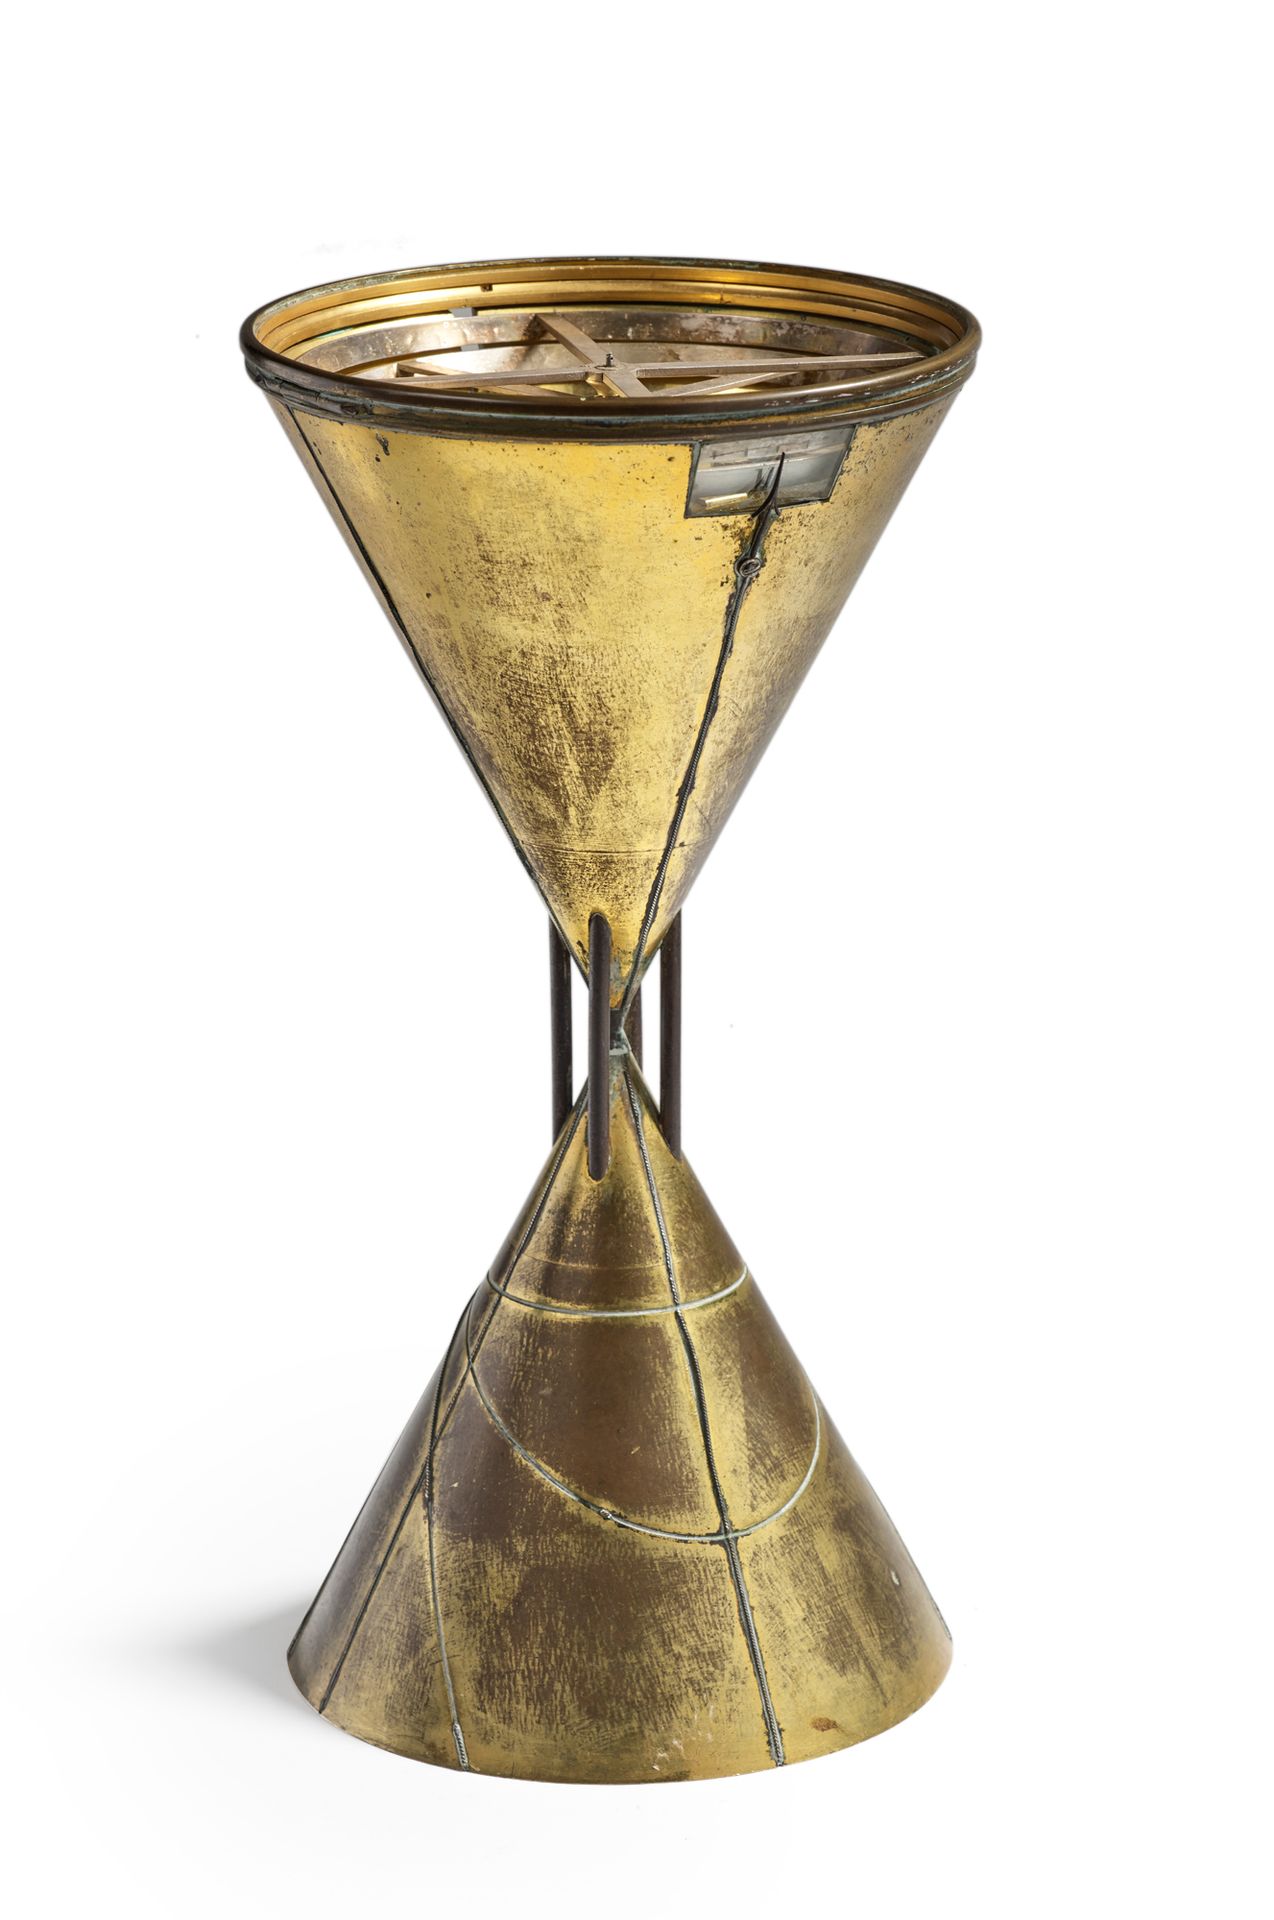 Null 
鎏金青铜沙漏形旋转圆钟。表盘上有显示小时和分钟的窗口。锥体上刻有银丝装饰（缺失）。

约1830年

H.32厘米 直径17厘米

(玻璃不见了)